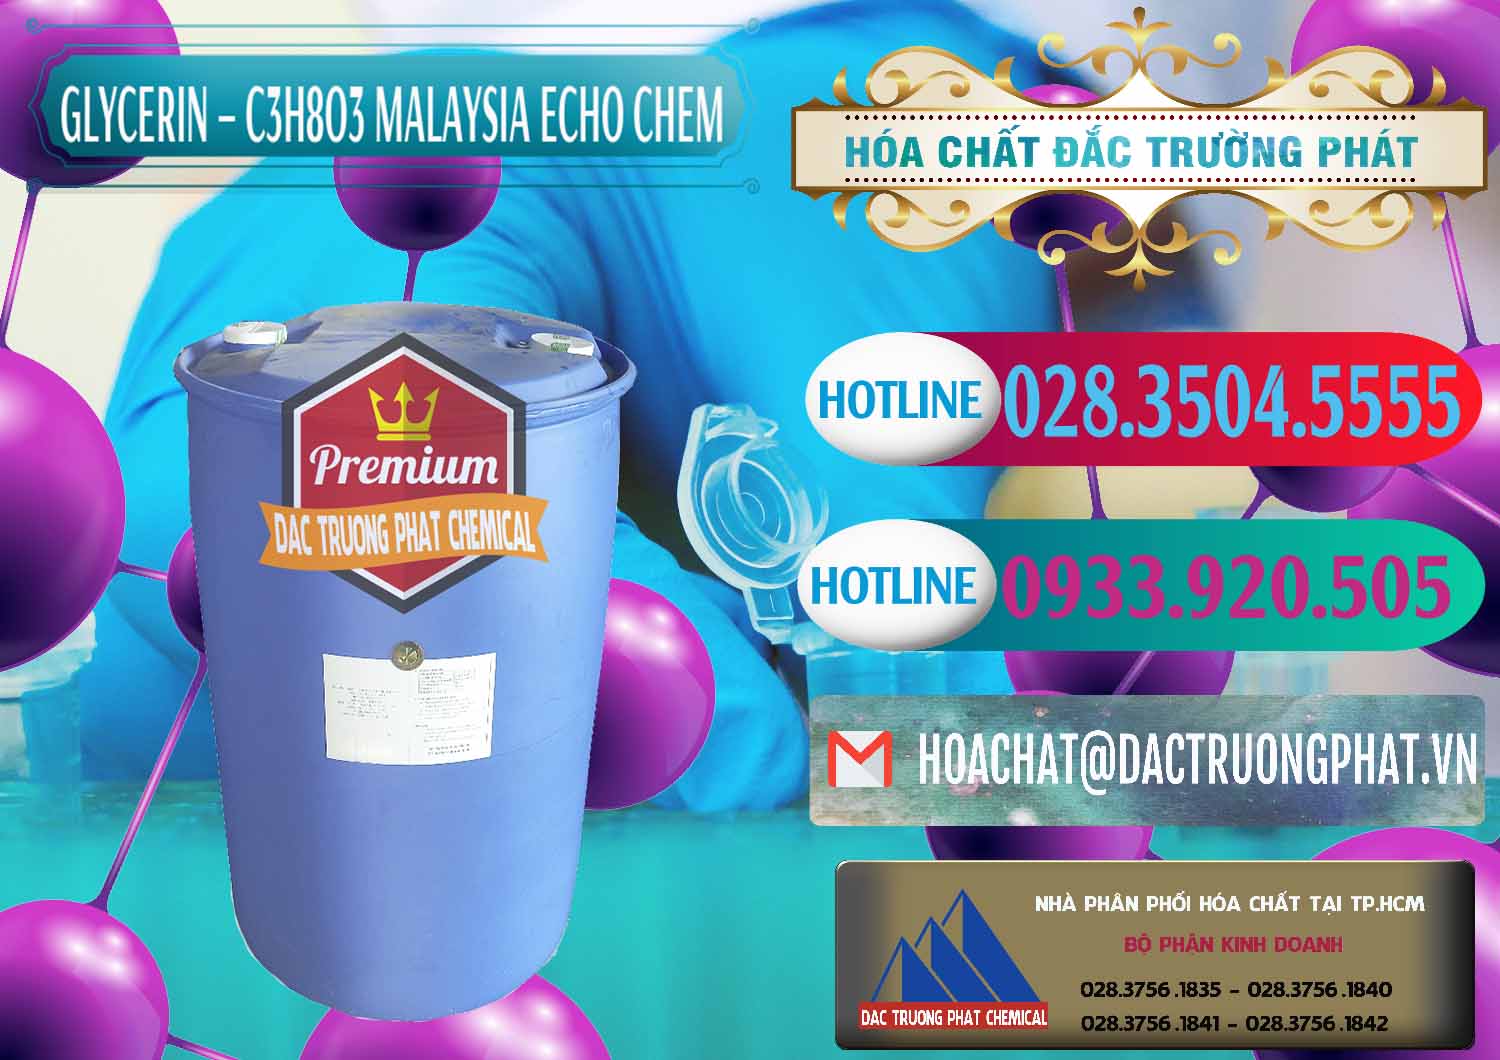 Chuyên cung ứng ( bán ) Glycerin – C3H8O3 99.7% Echo Chem Malaysia - 0273 - Công ty nhập khẩu & phân phối hóa chất tại TP.HCM - truongphat.vn